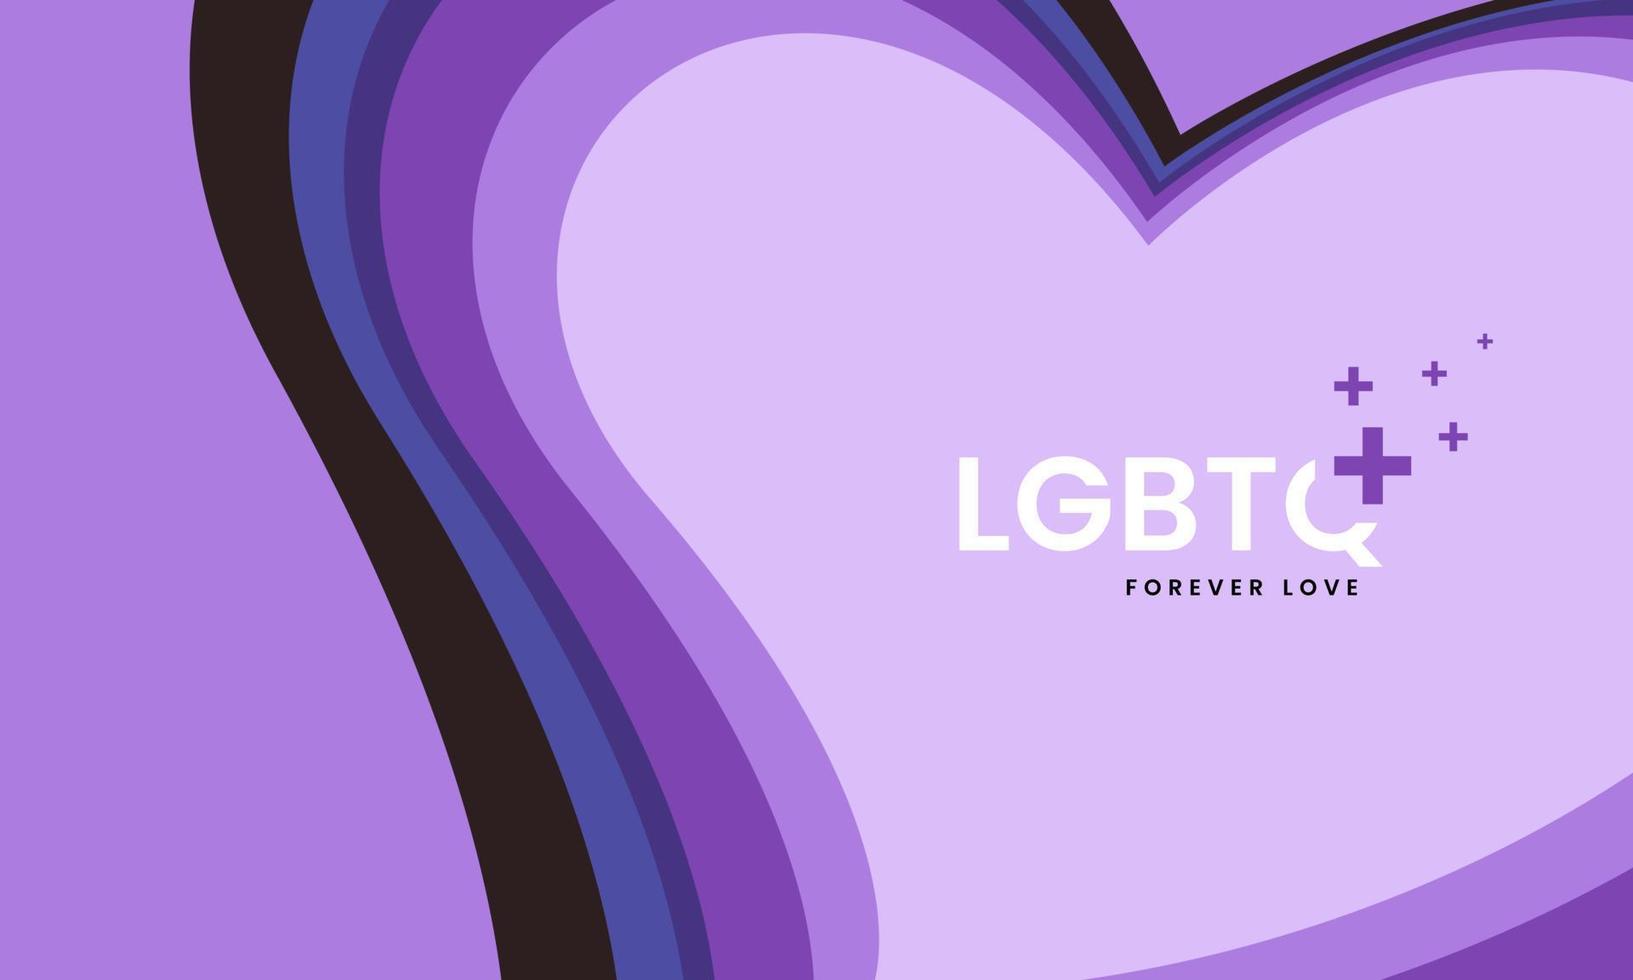 lgbtq plus design de fundo colorido em forma de coração de arco-íris para o mês do orgulho lgbtq em fundo roxo claro com espaço de texto, vetor e modelo de ilustração